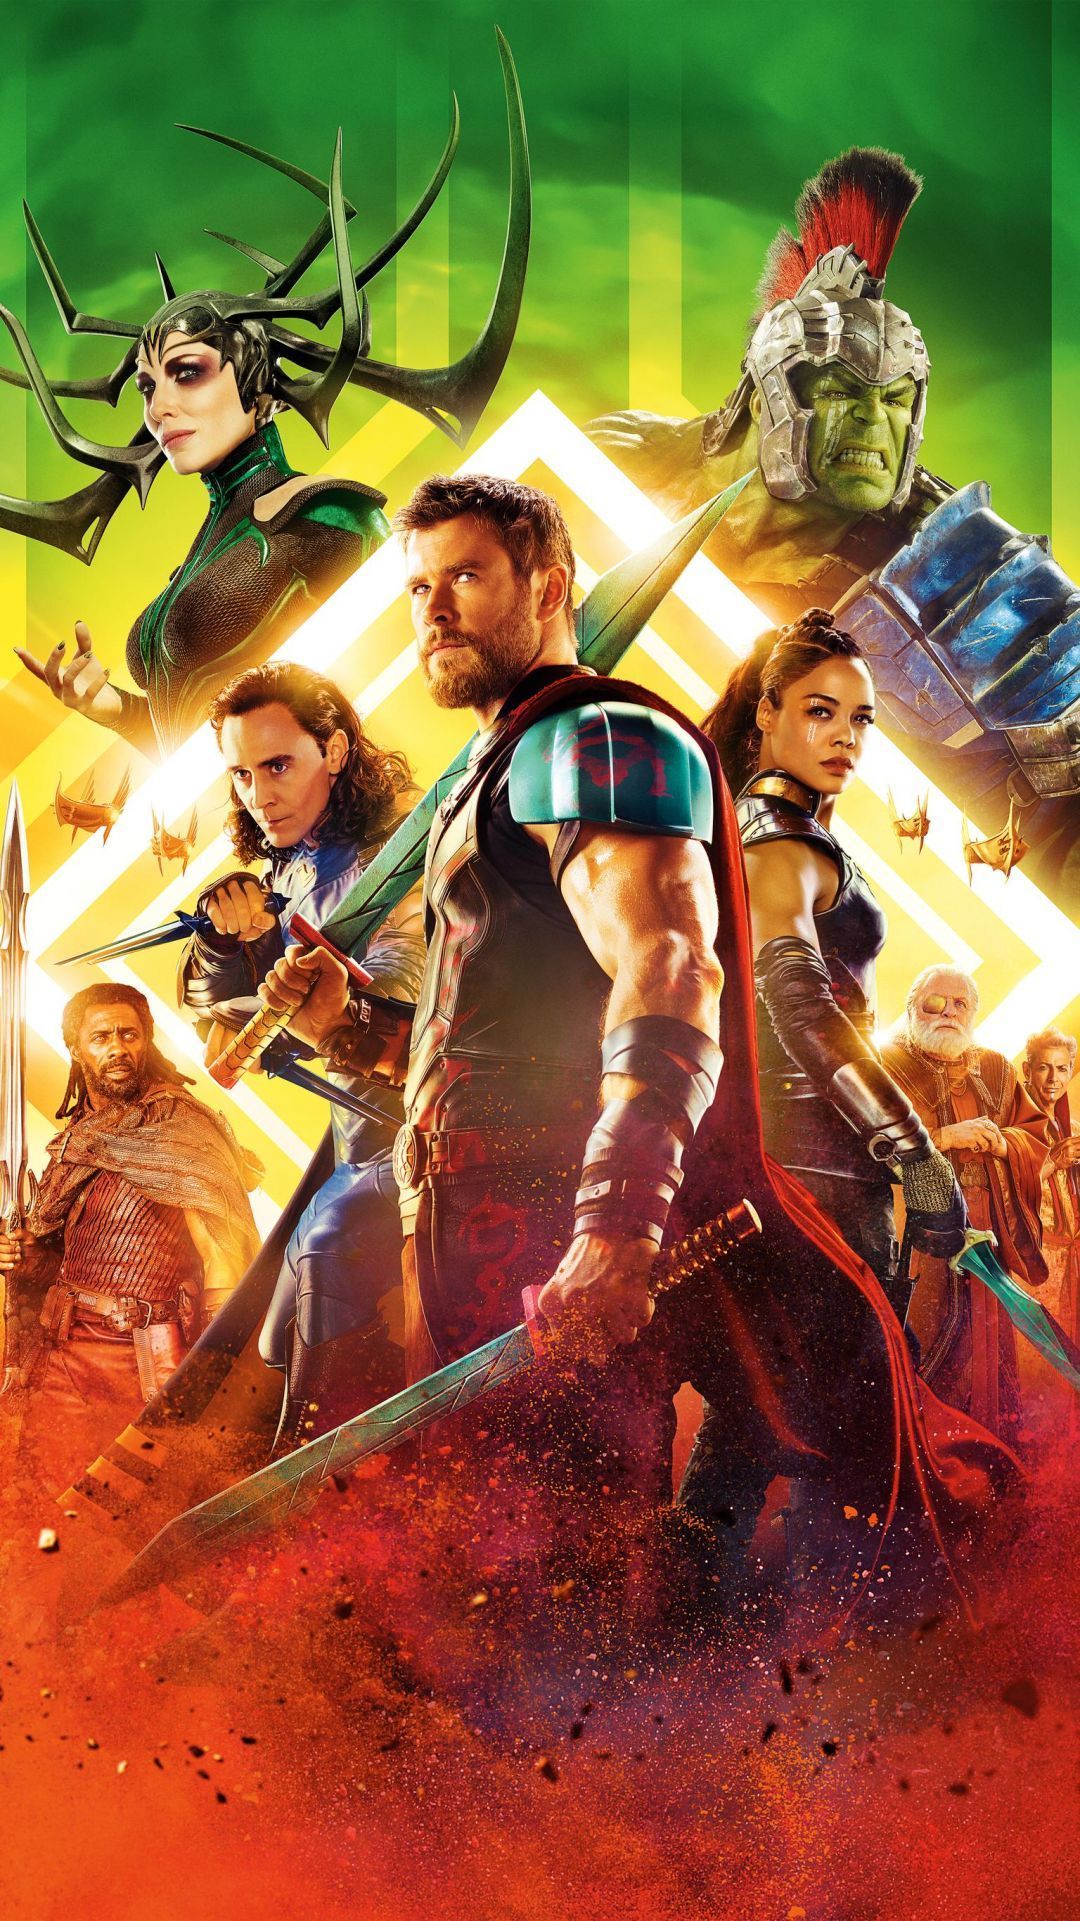 Thor Movie Poster, iPhone, Desktop HD Background / Wallpaper (1080p, 4k) #hdwallp. Thor ragnarok movie, Ragnarok movie, Marvel movie posters